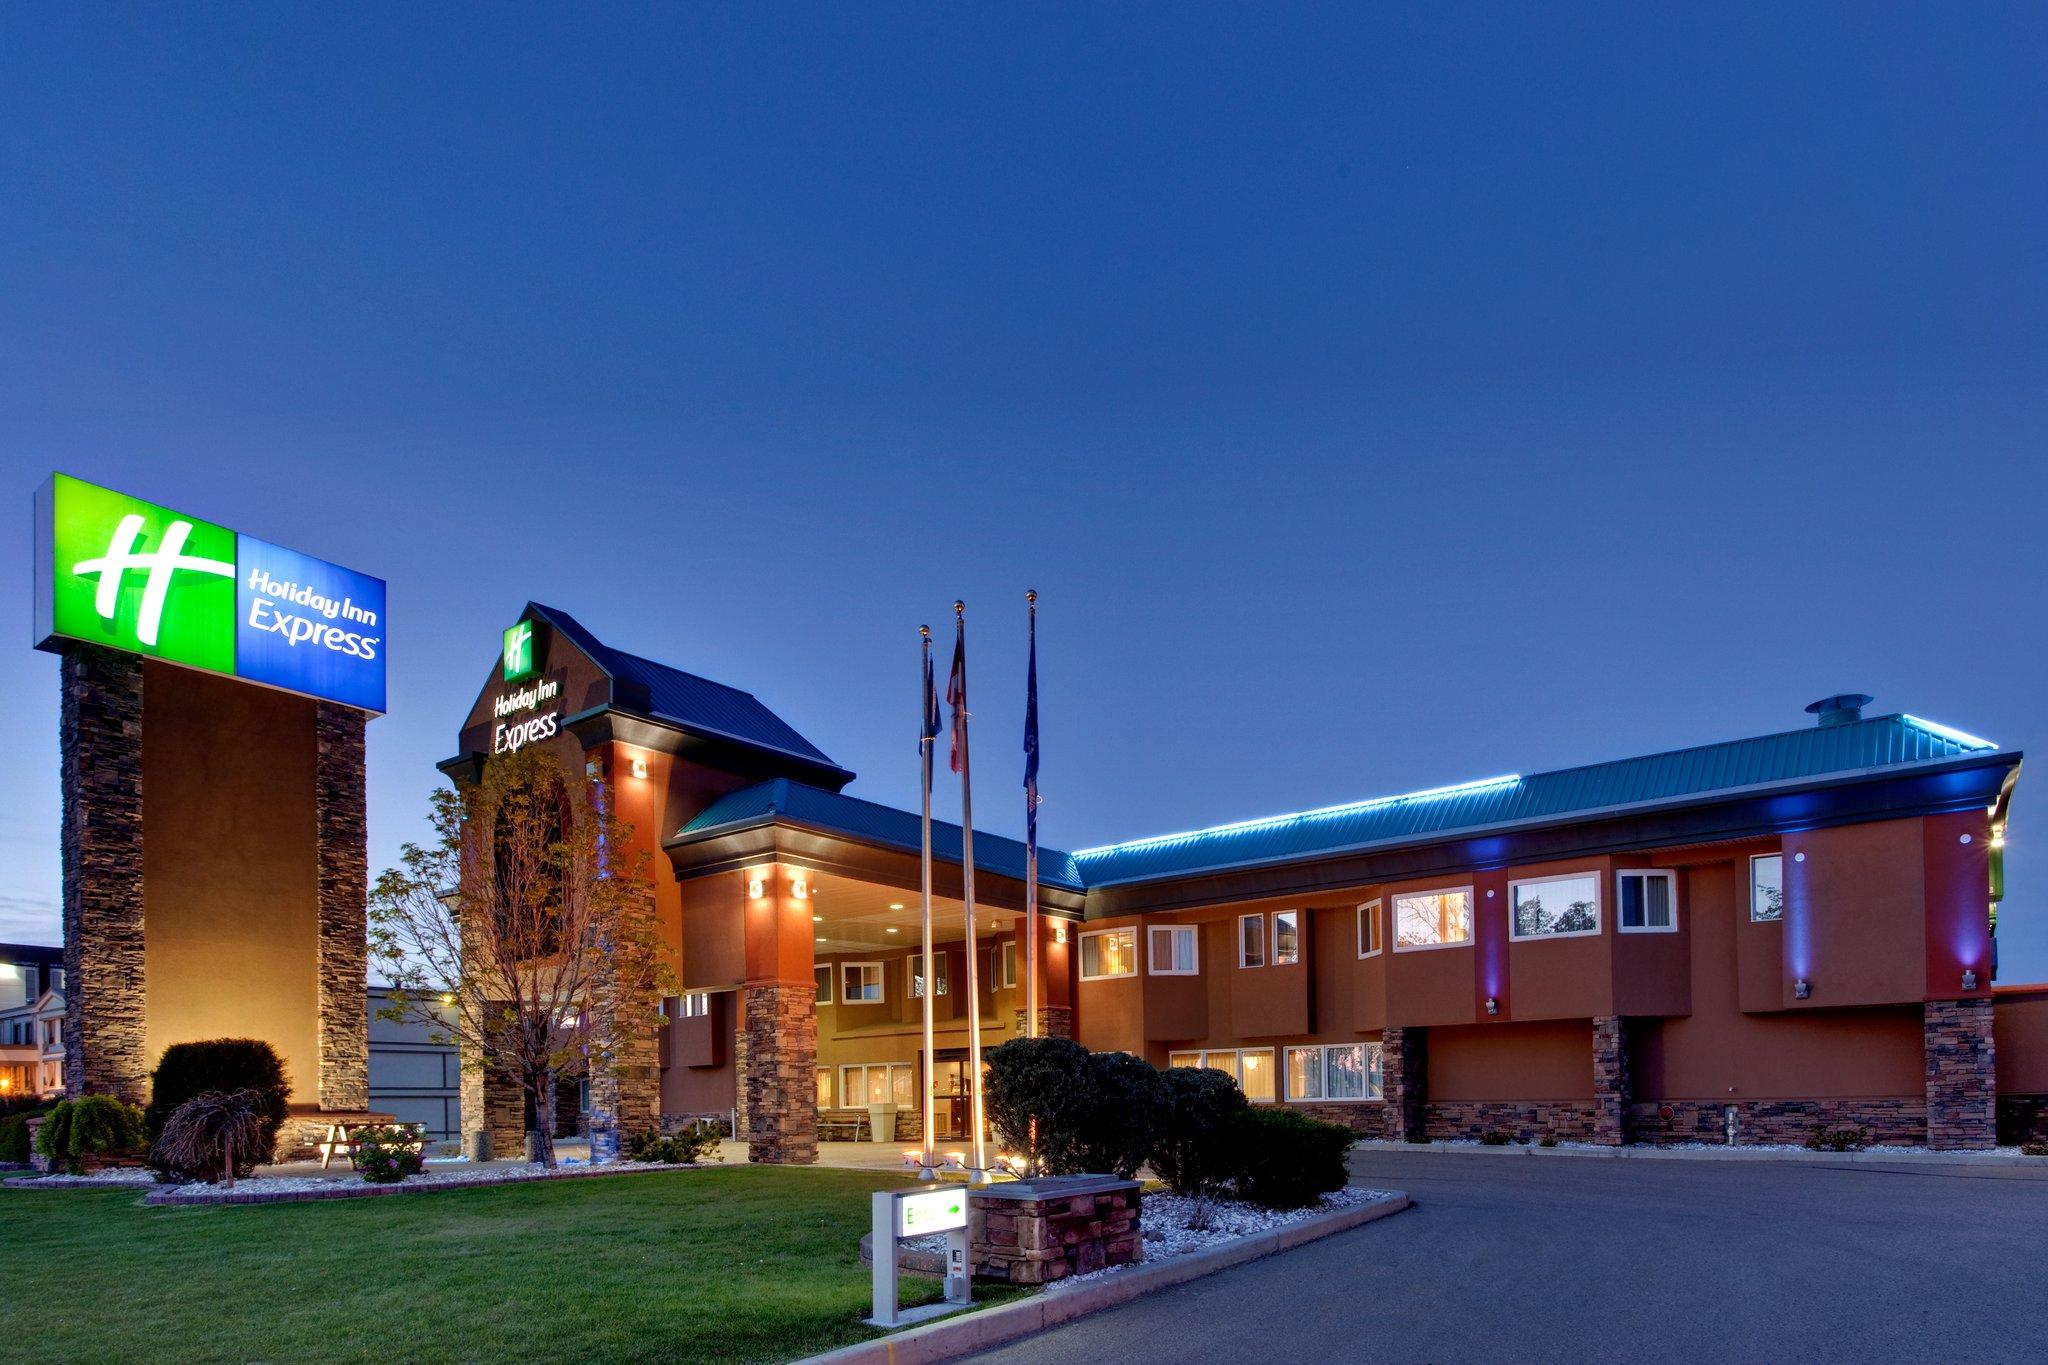 Holiday Inn Express Red Deer in Red Deer, AB